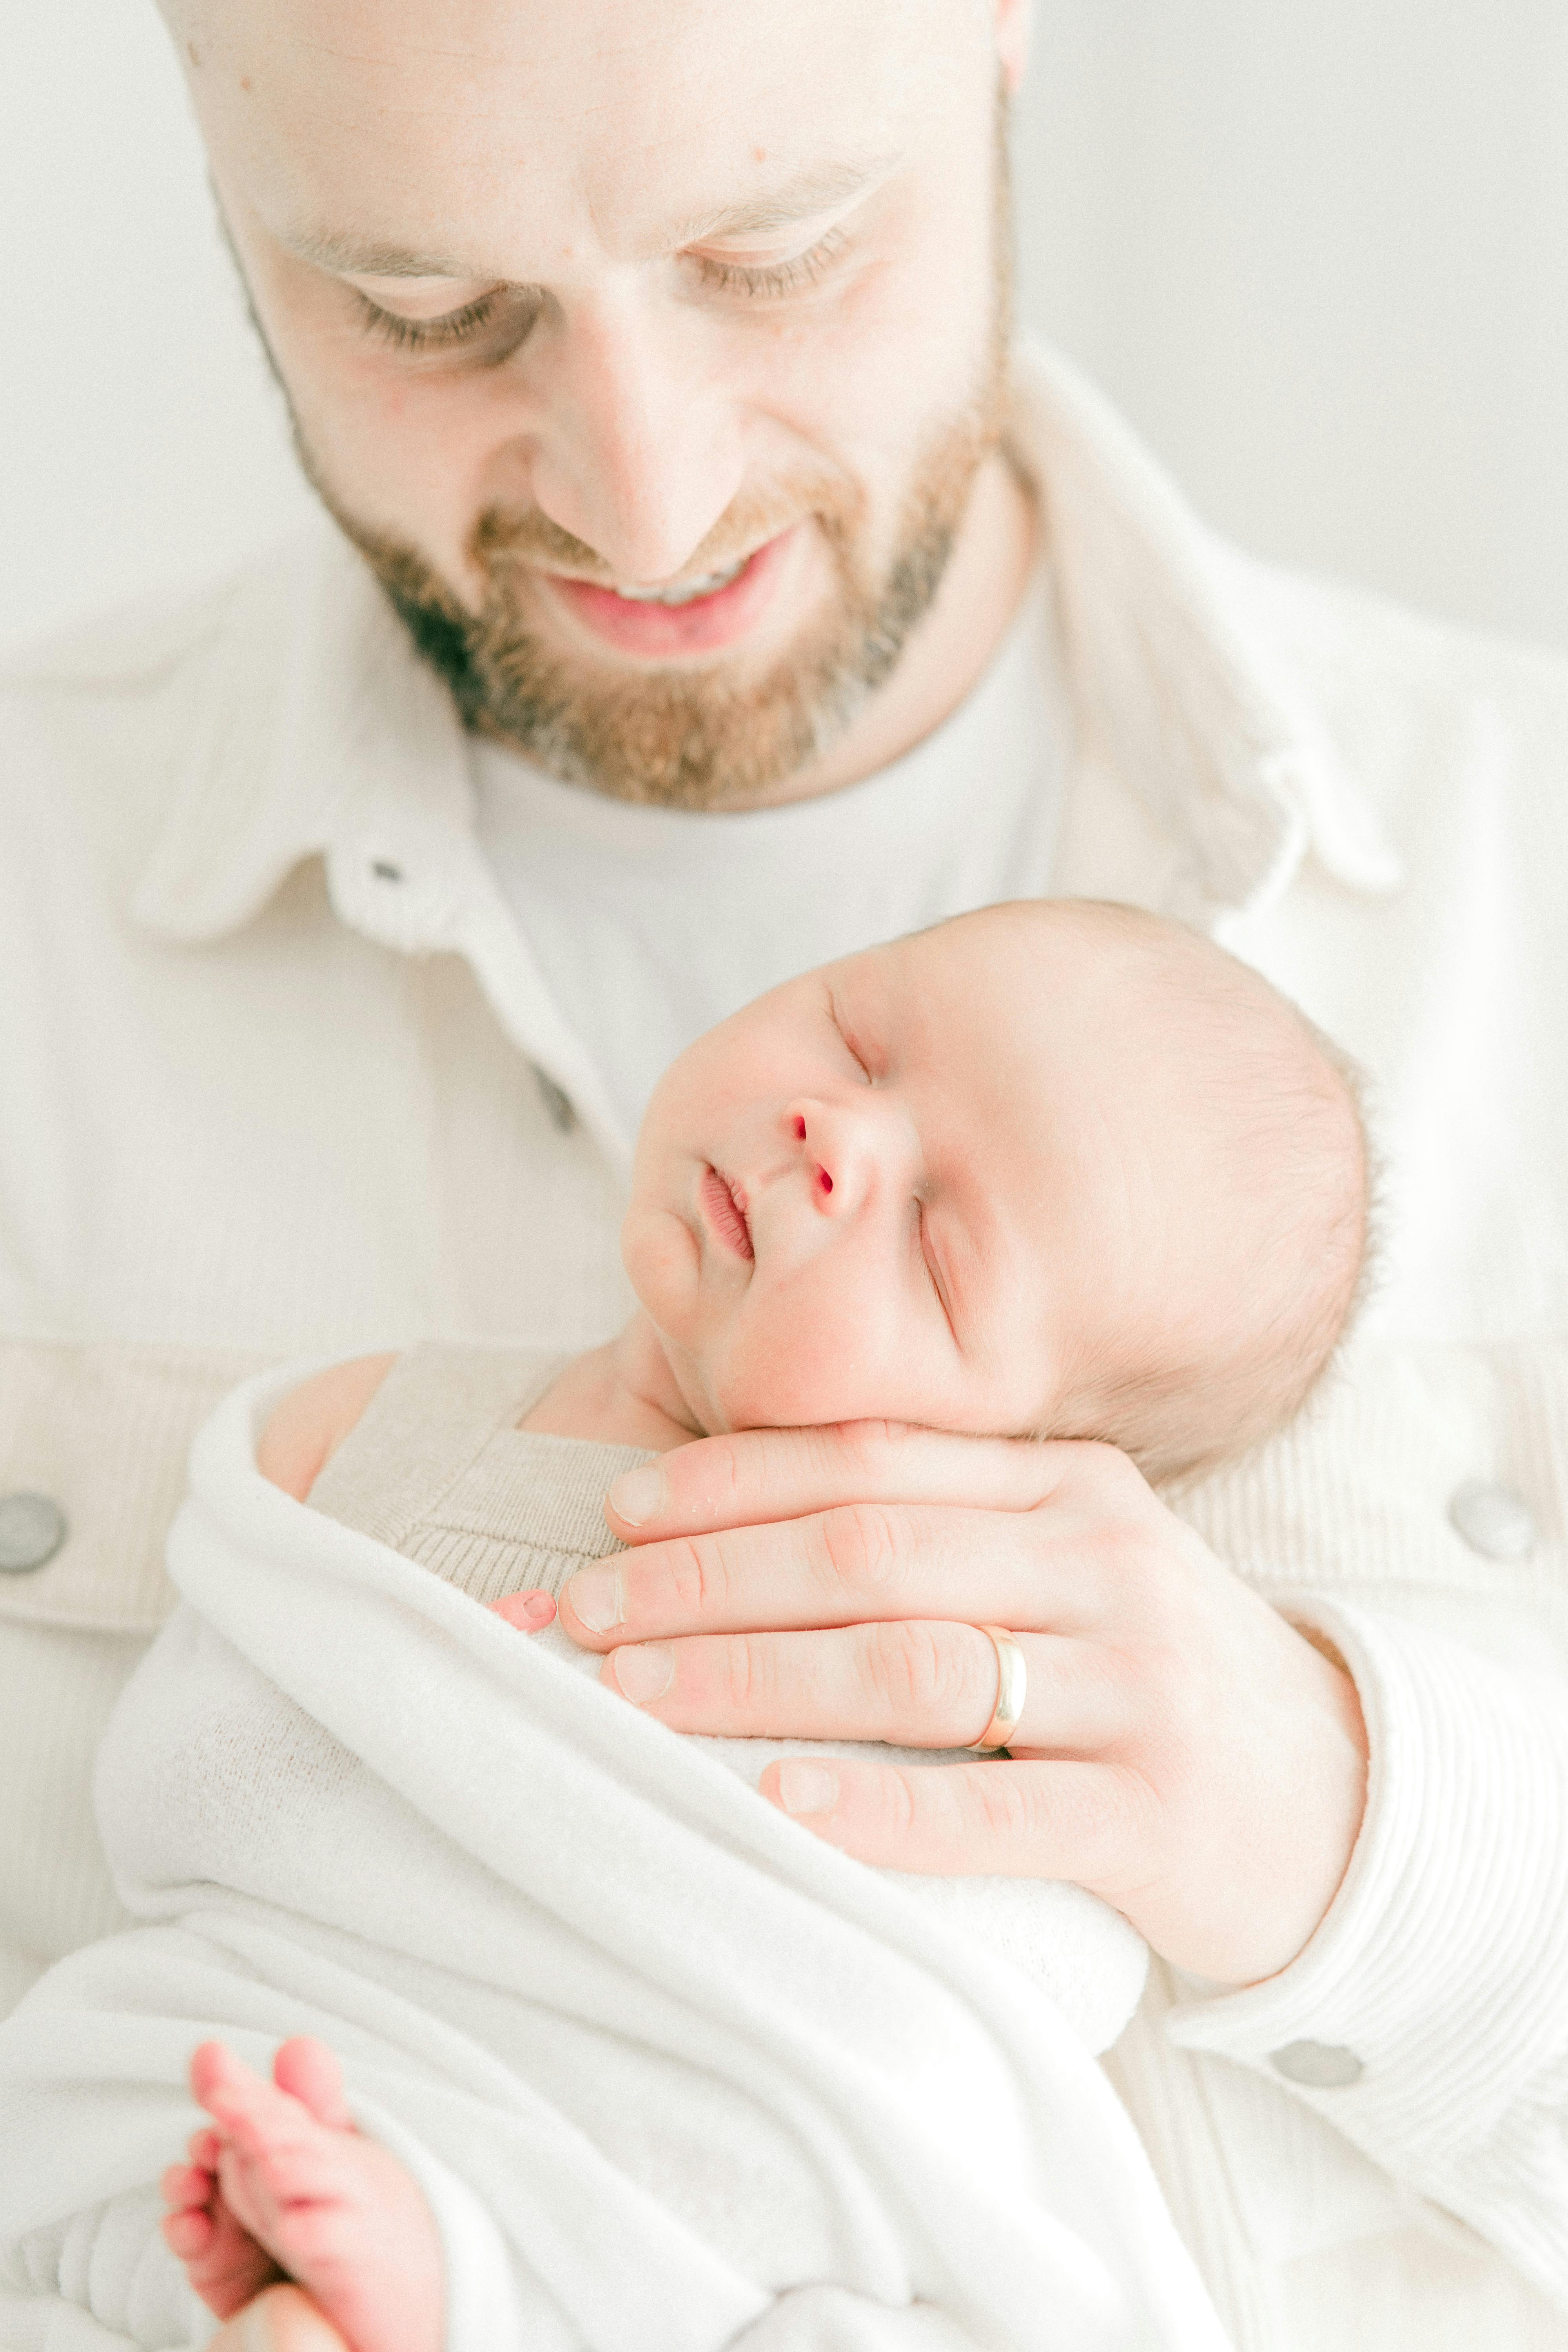 Un bebé recién nacido en brazos de un padre feliz | Fuente: Pexels